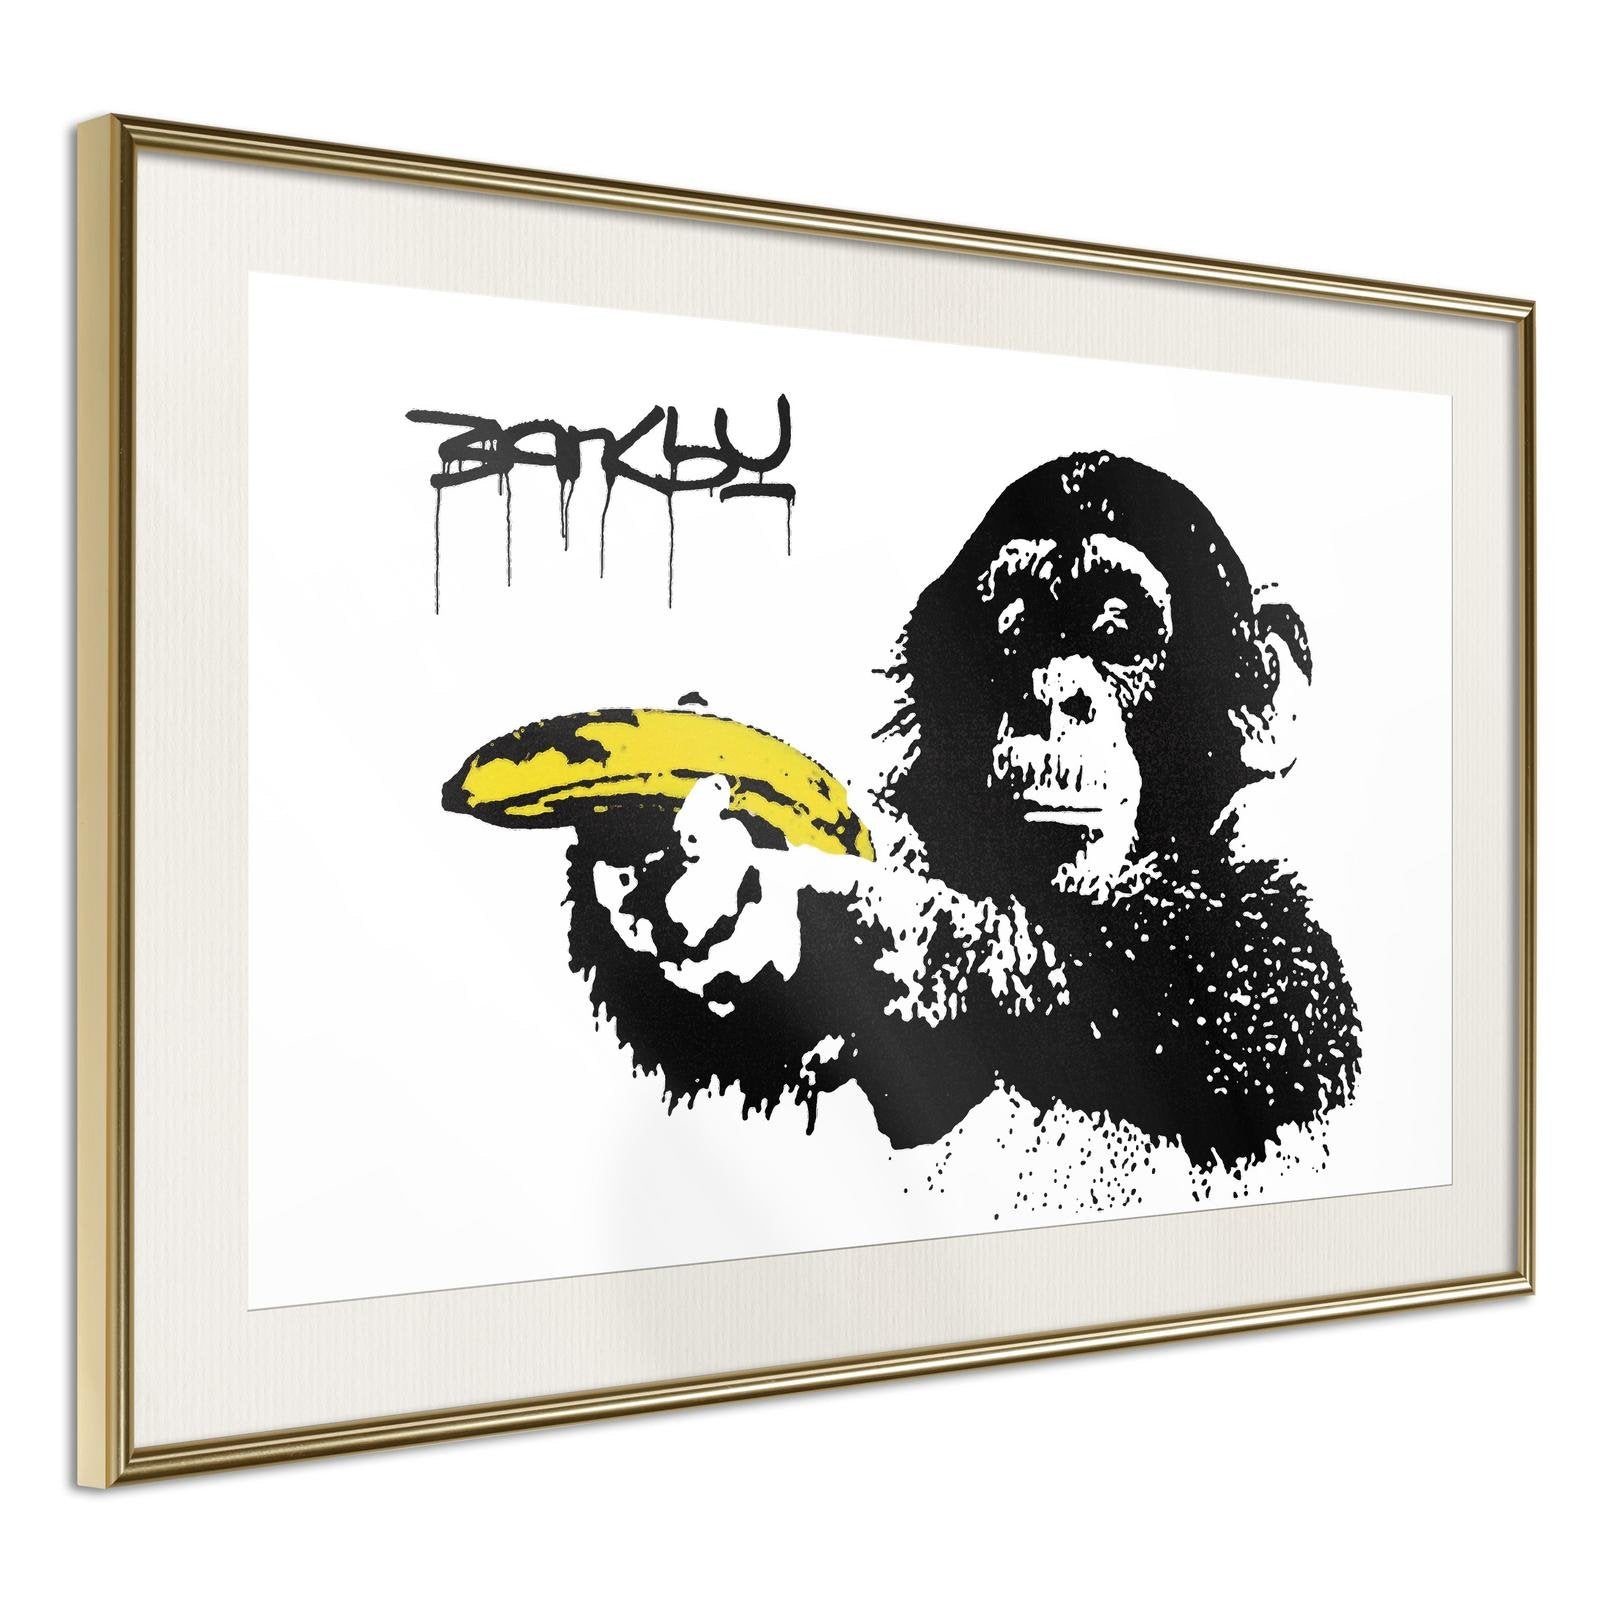 Affiche Banksy banana gun